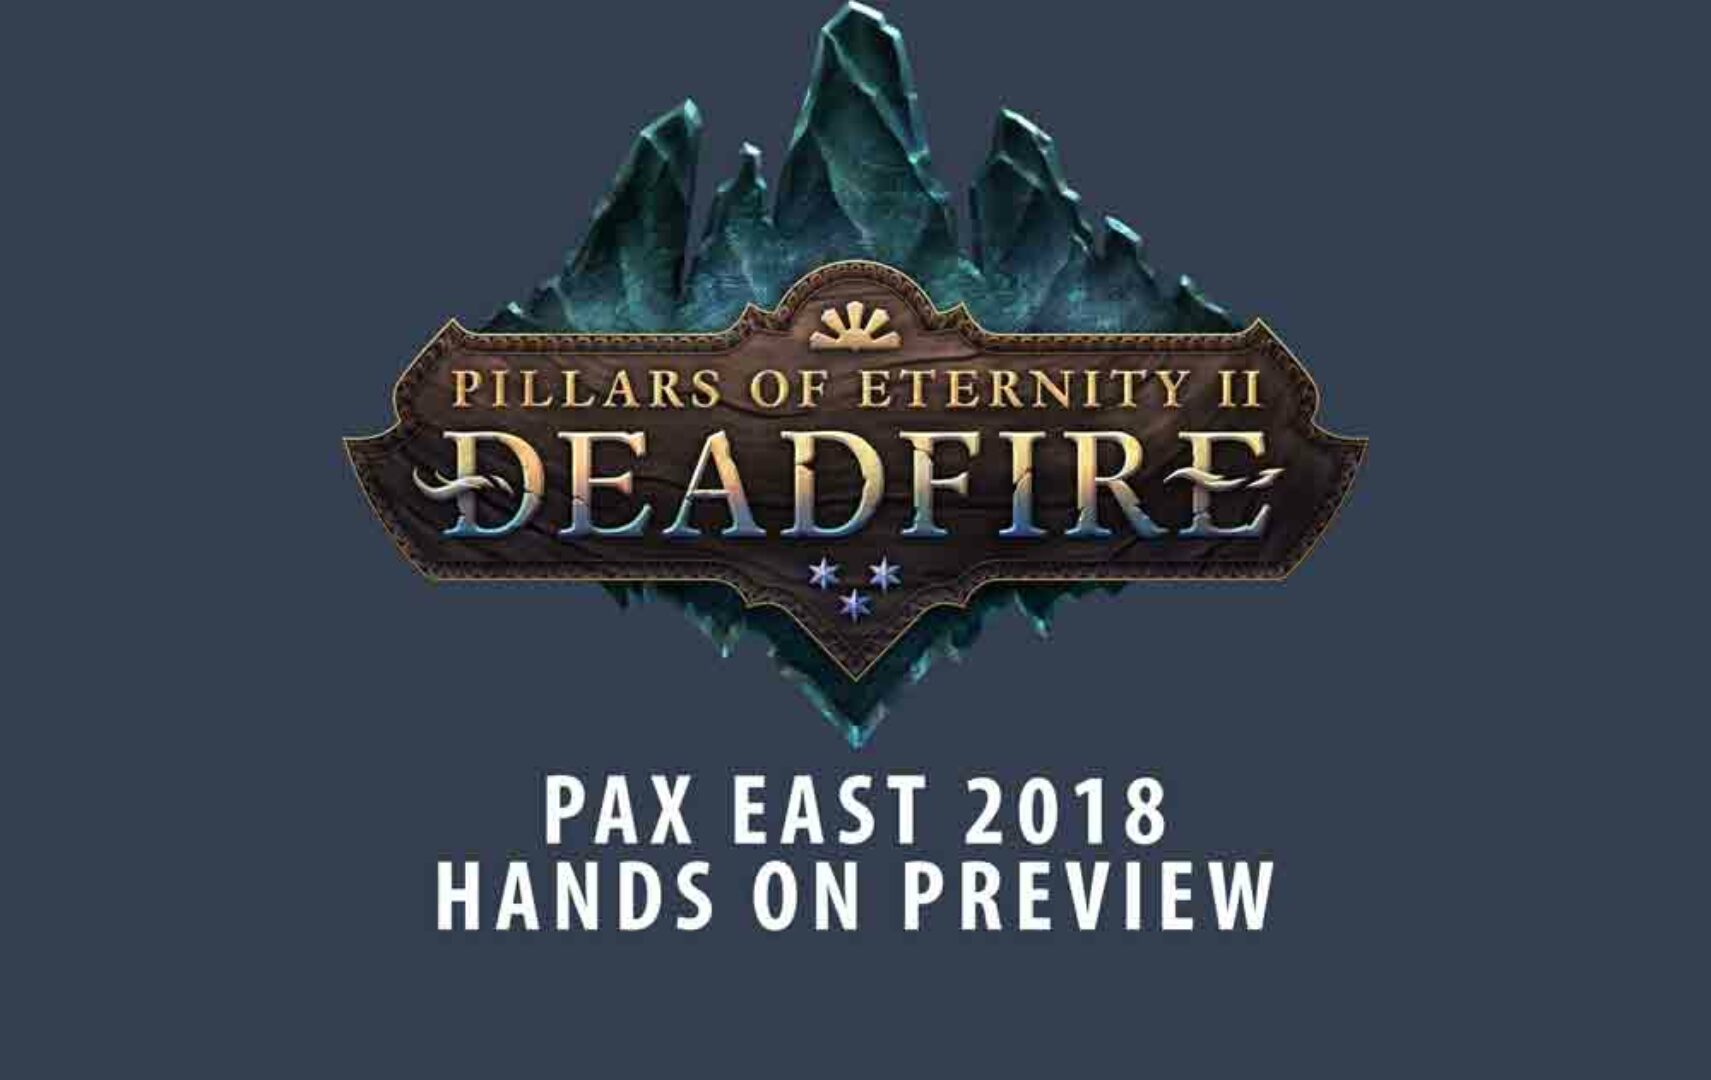 ‘Pillars of Eternity II’ Deadfire PAX Hands On